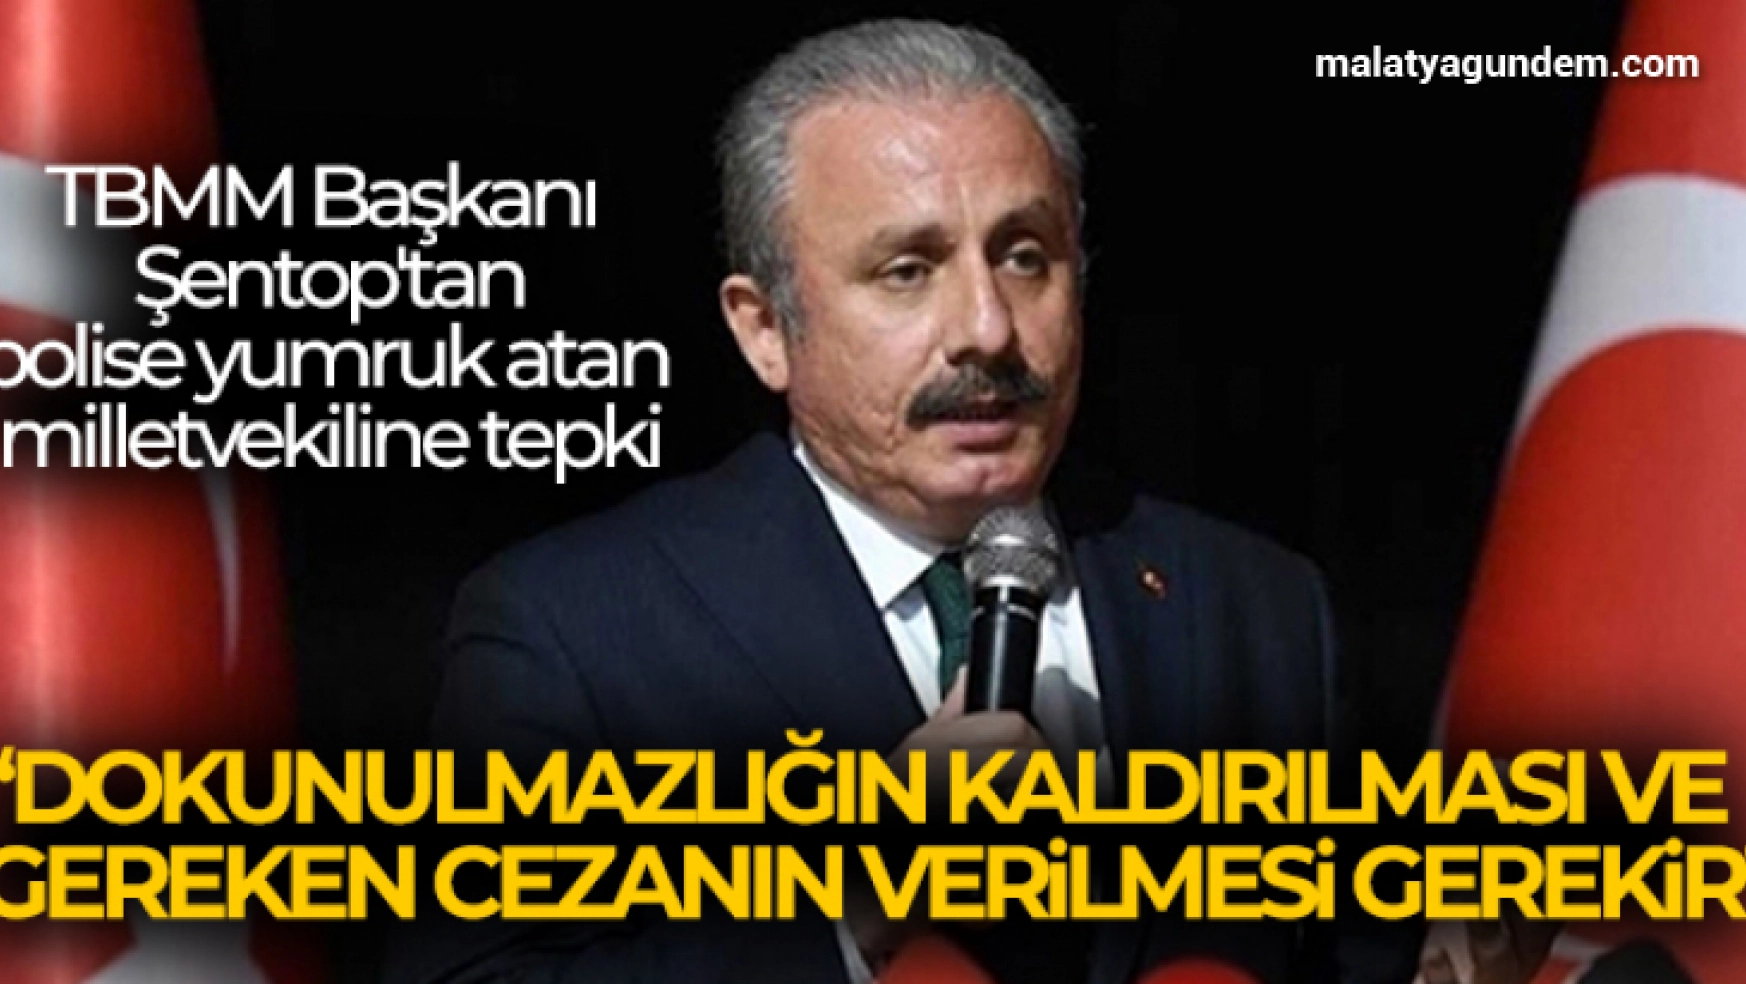 TBMM Başkanı Mustafa Şentop: 'Dokunulmazlığın kaldırılması ve gereken cezanın verilmesi gerekir'